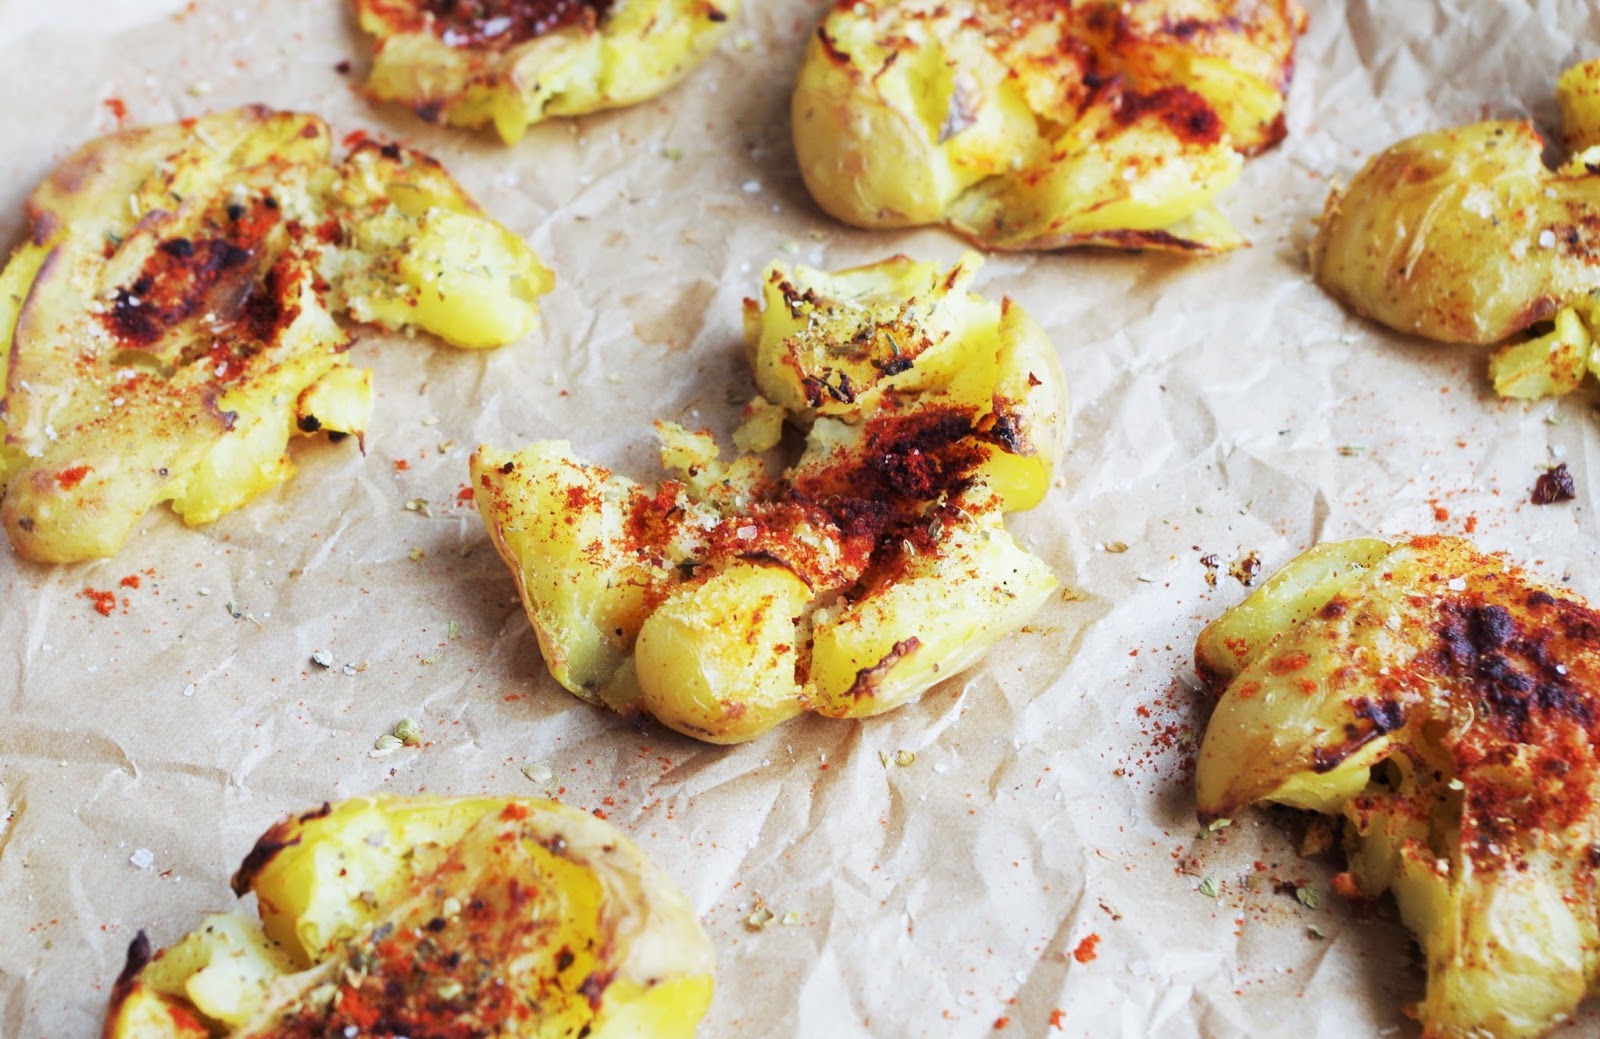 Smashed Paprika Potatoes |Euphoric Vegan